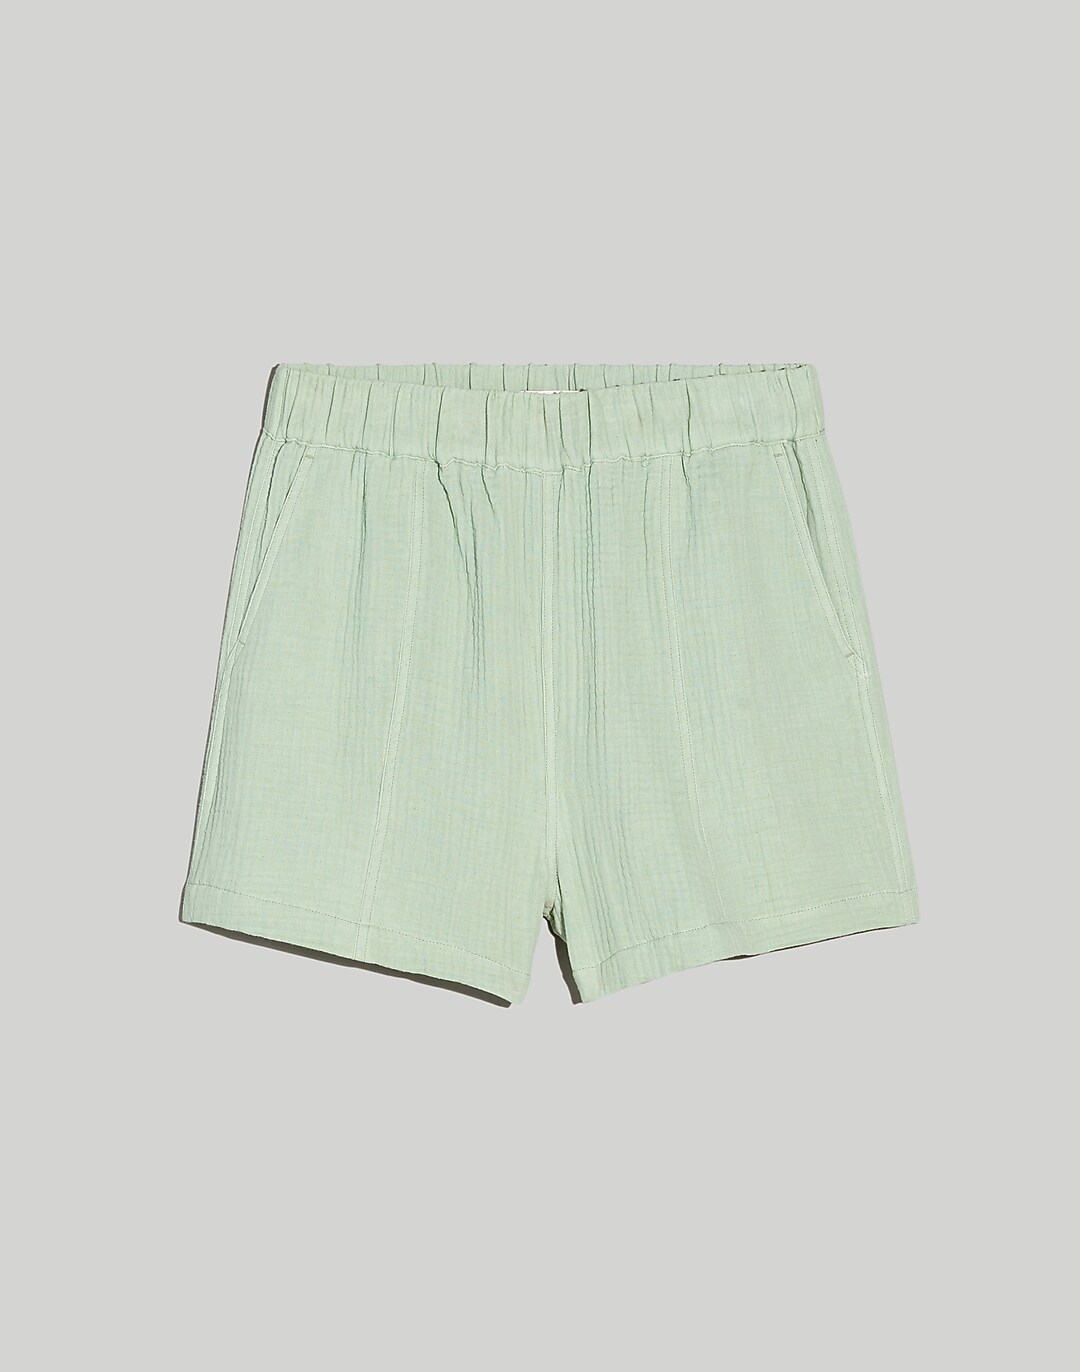 Easy Pull-On Shorts in Lightspun | Madewell